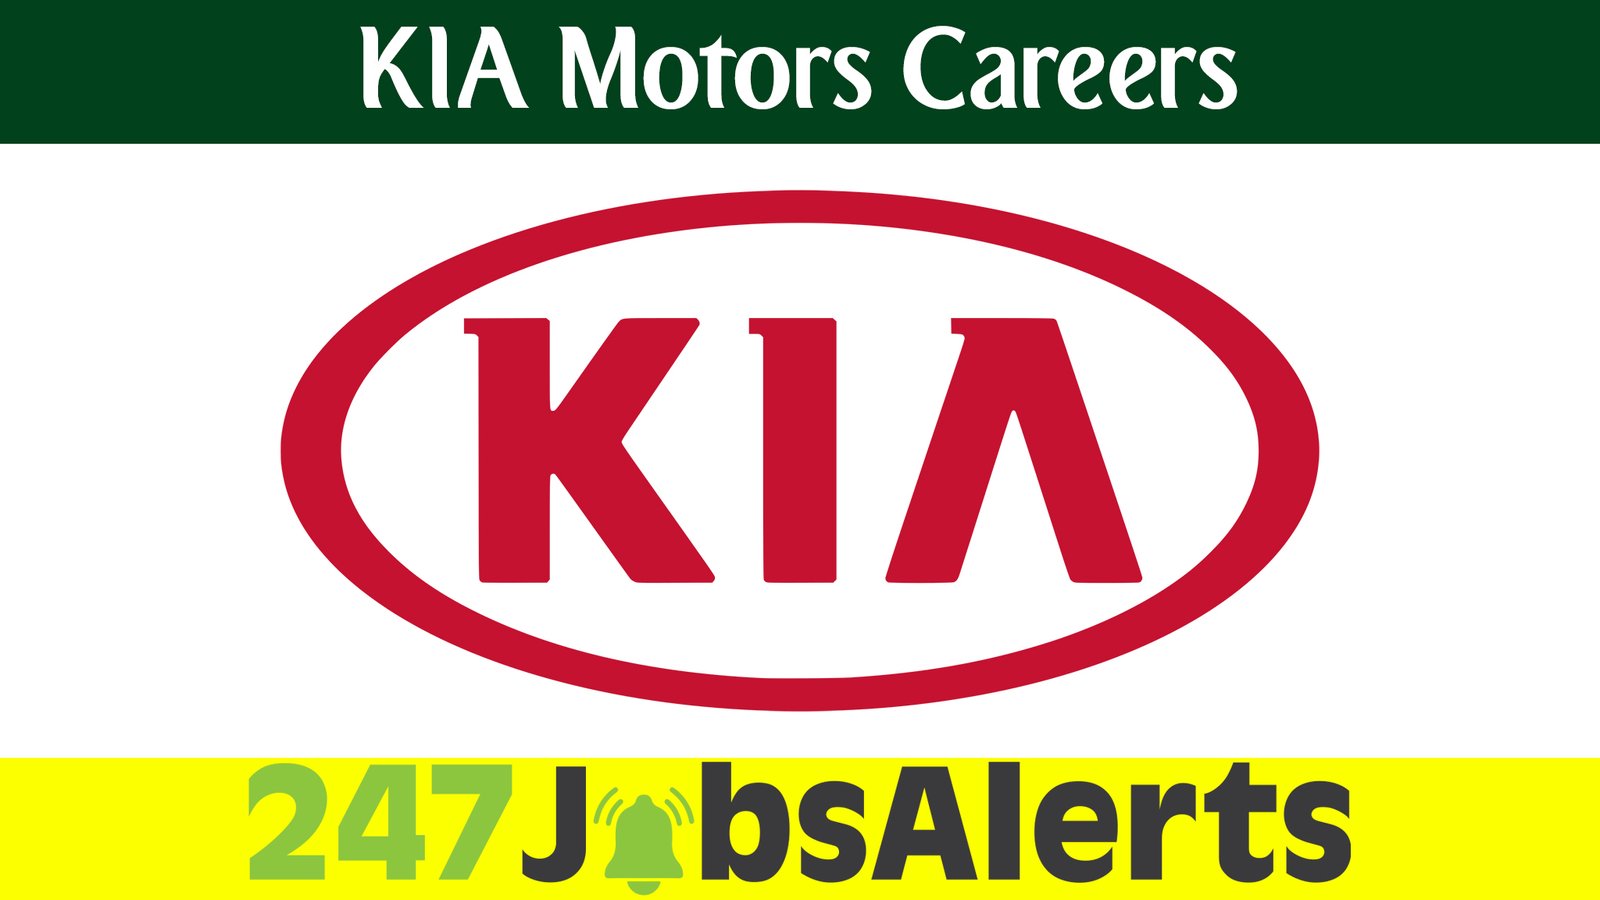 KIA Motors Careers